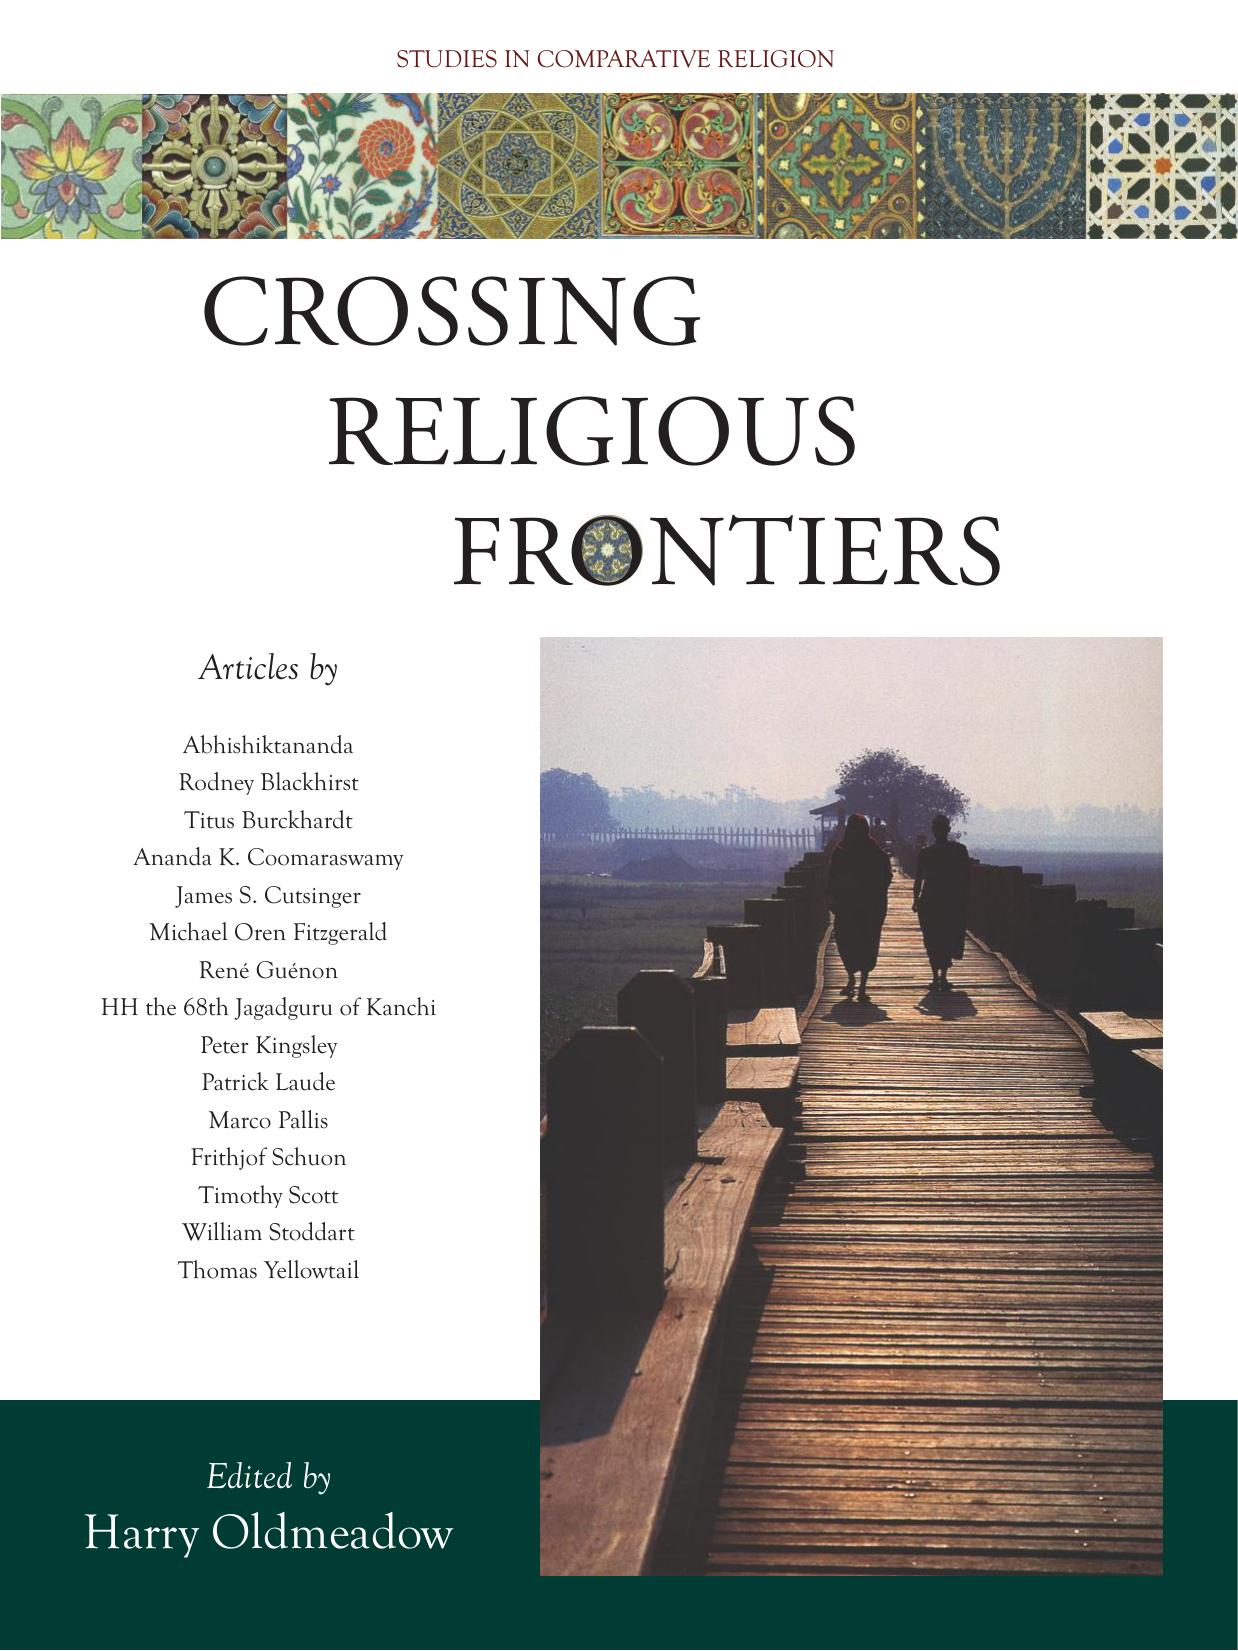 Crossing Religious Frontiers: Studies in Comparative Religion (Studies in Comparative Religion (World Wisdom))